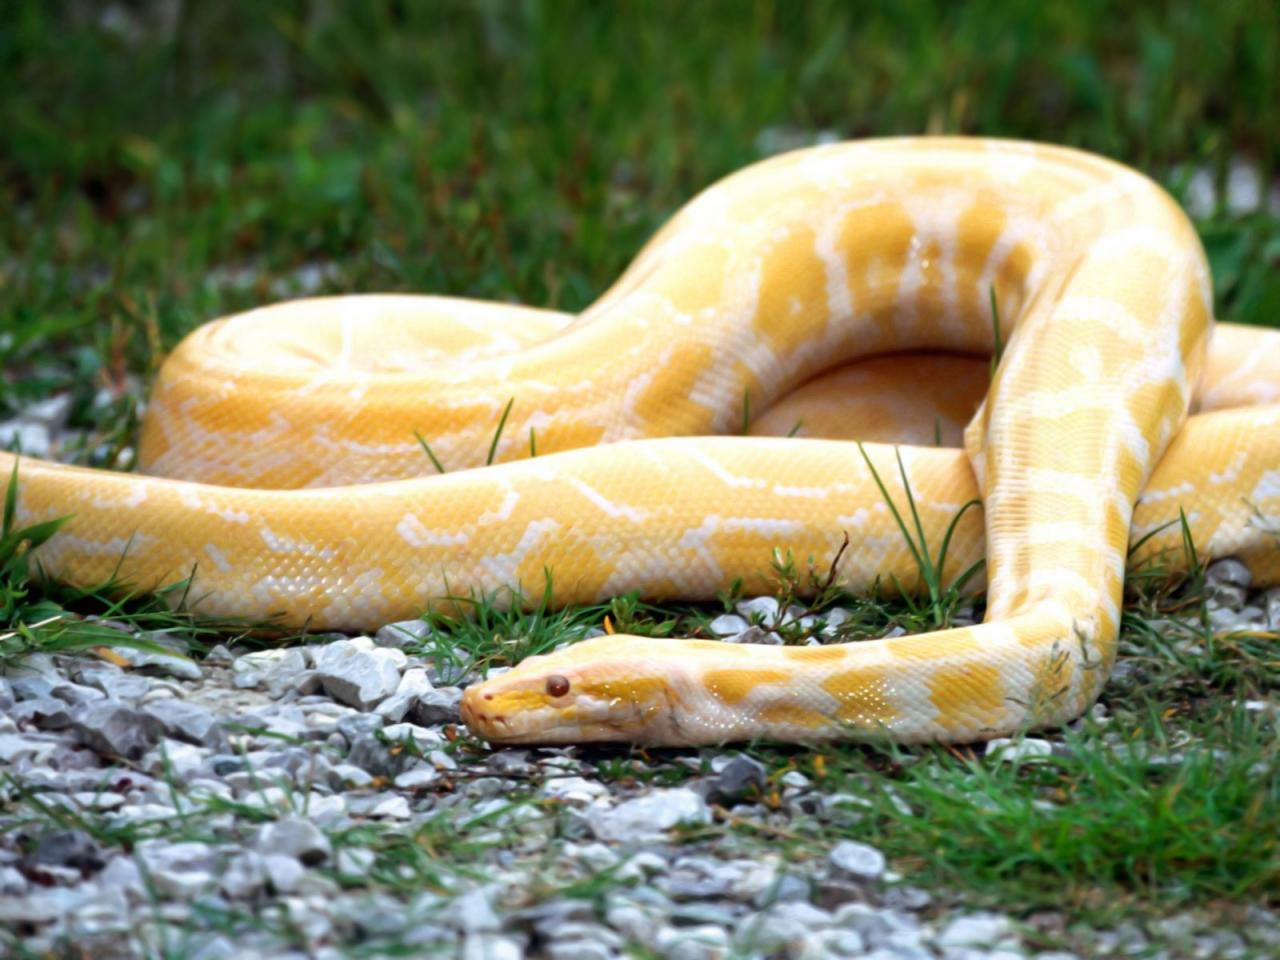 Желтая земляная змея